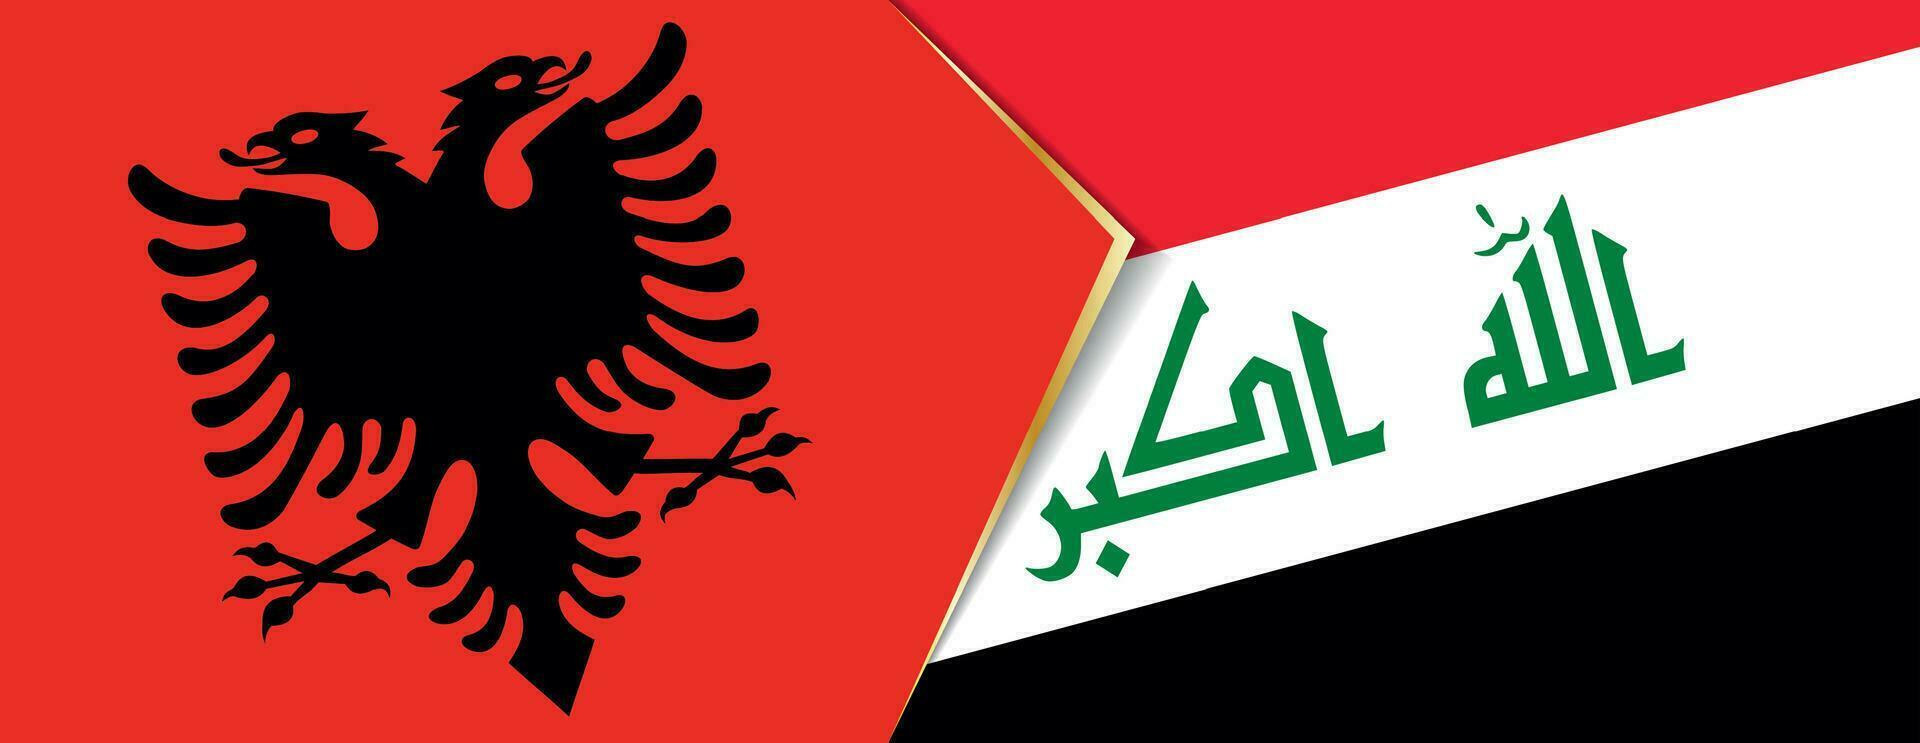 albania och irak flaggor, två vektor flaggor.